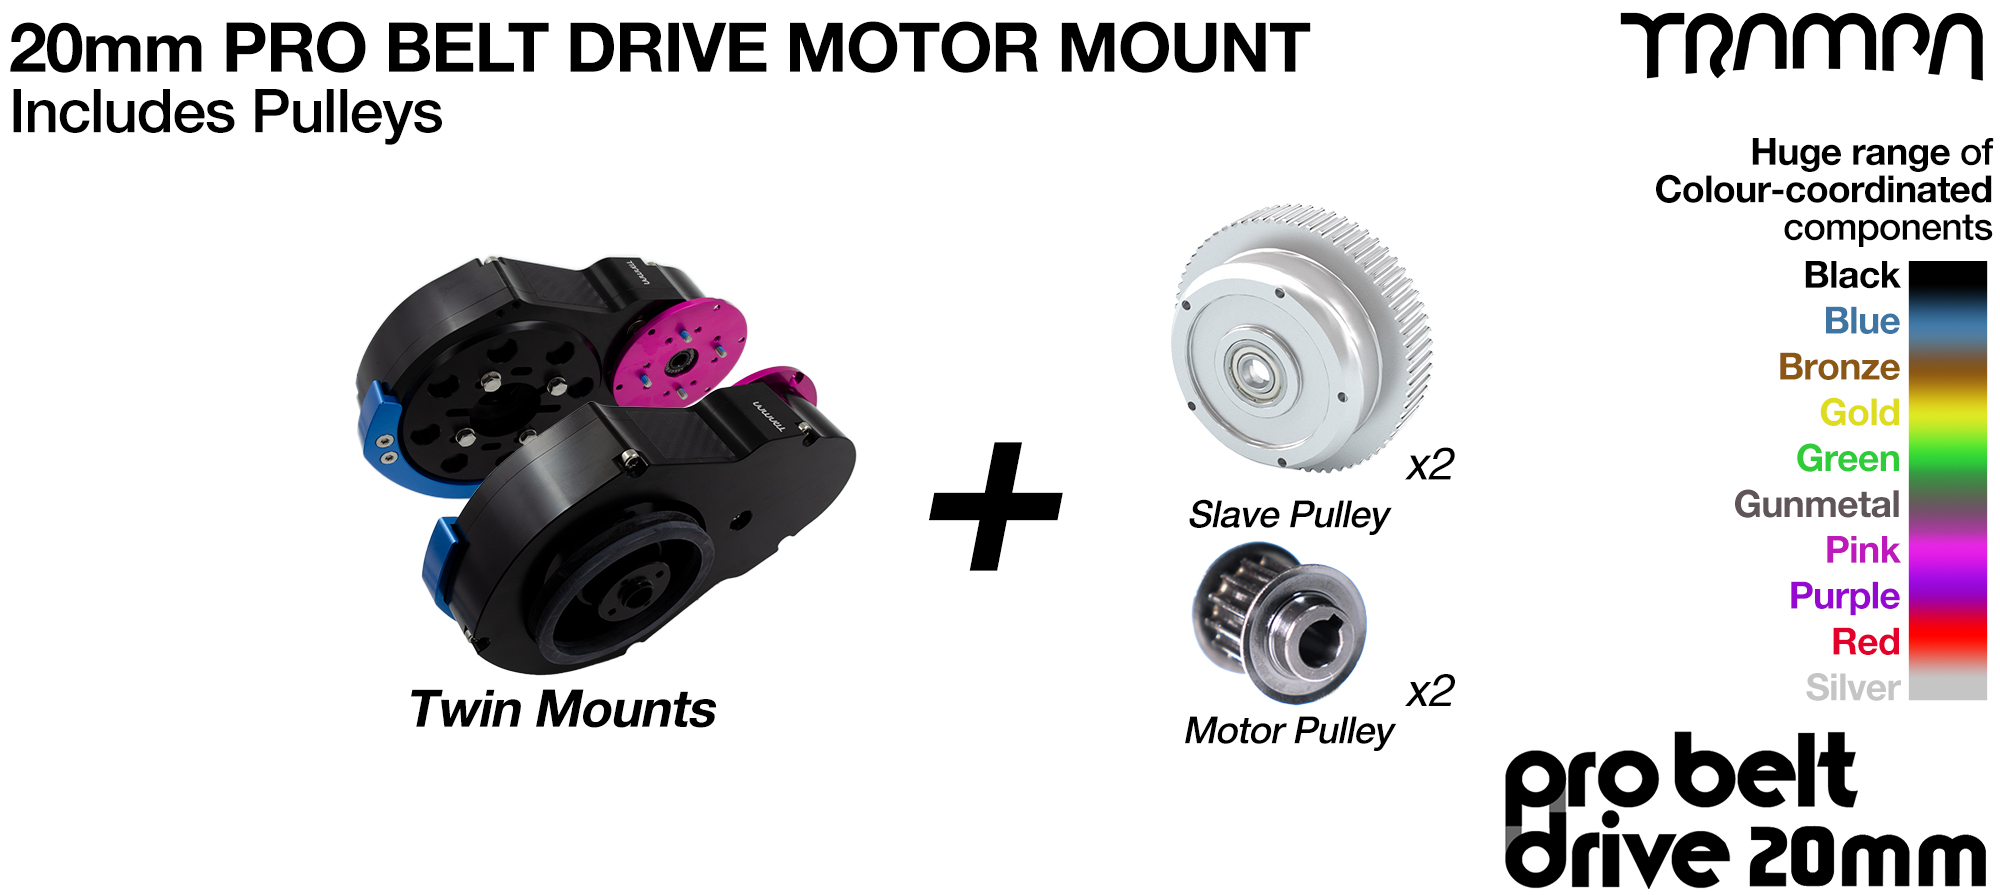 Add a PRO BELT Drive 20mm Motor Mount (+£300)